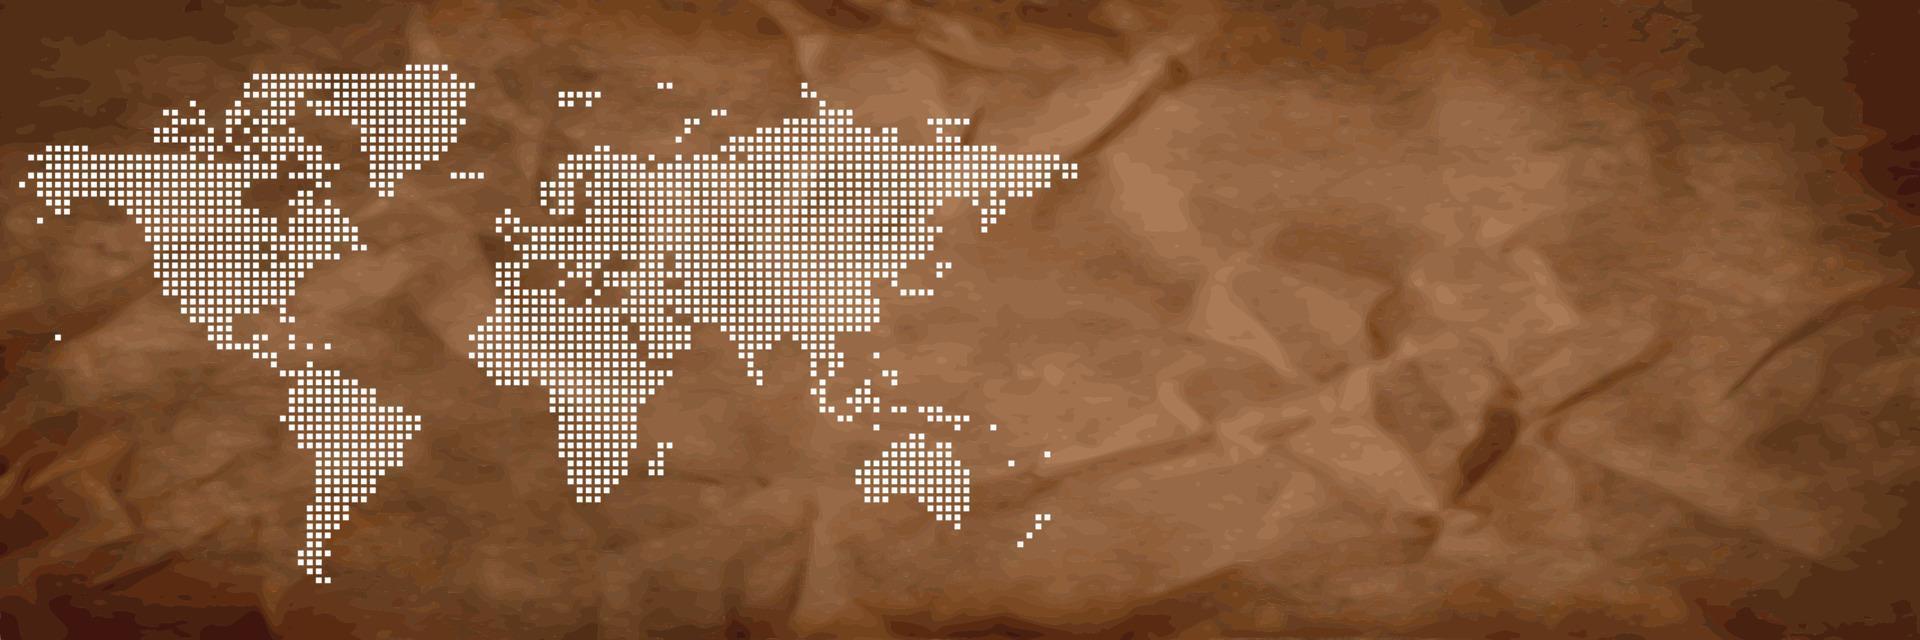 wereldkaart op bruine achtergrondbanner vector